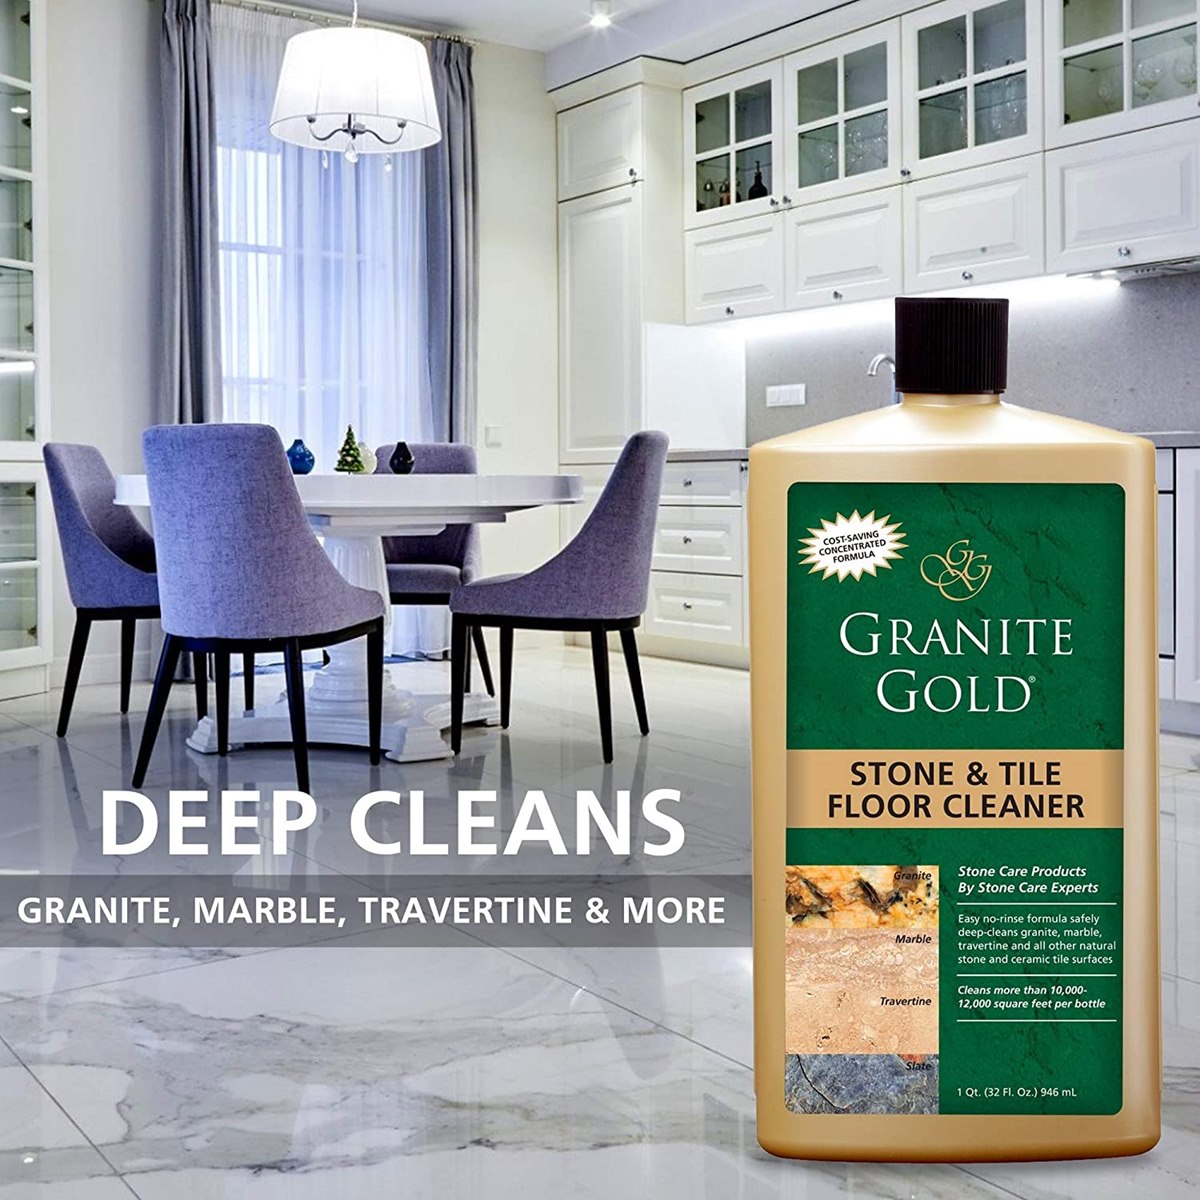 How to Clean Granite Floors